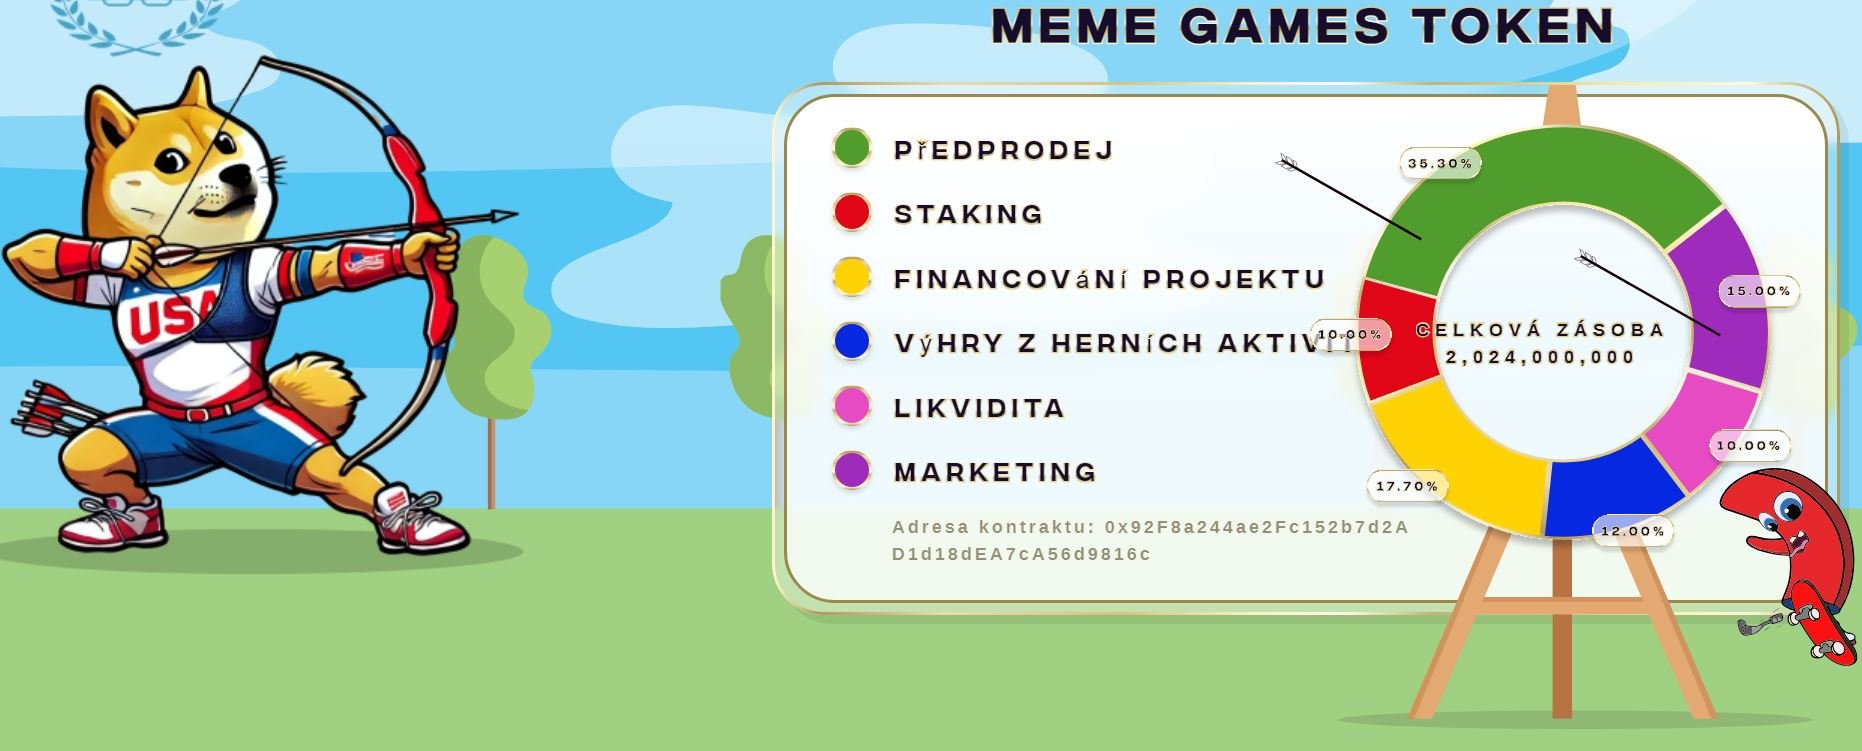 meme games tokenomika